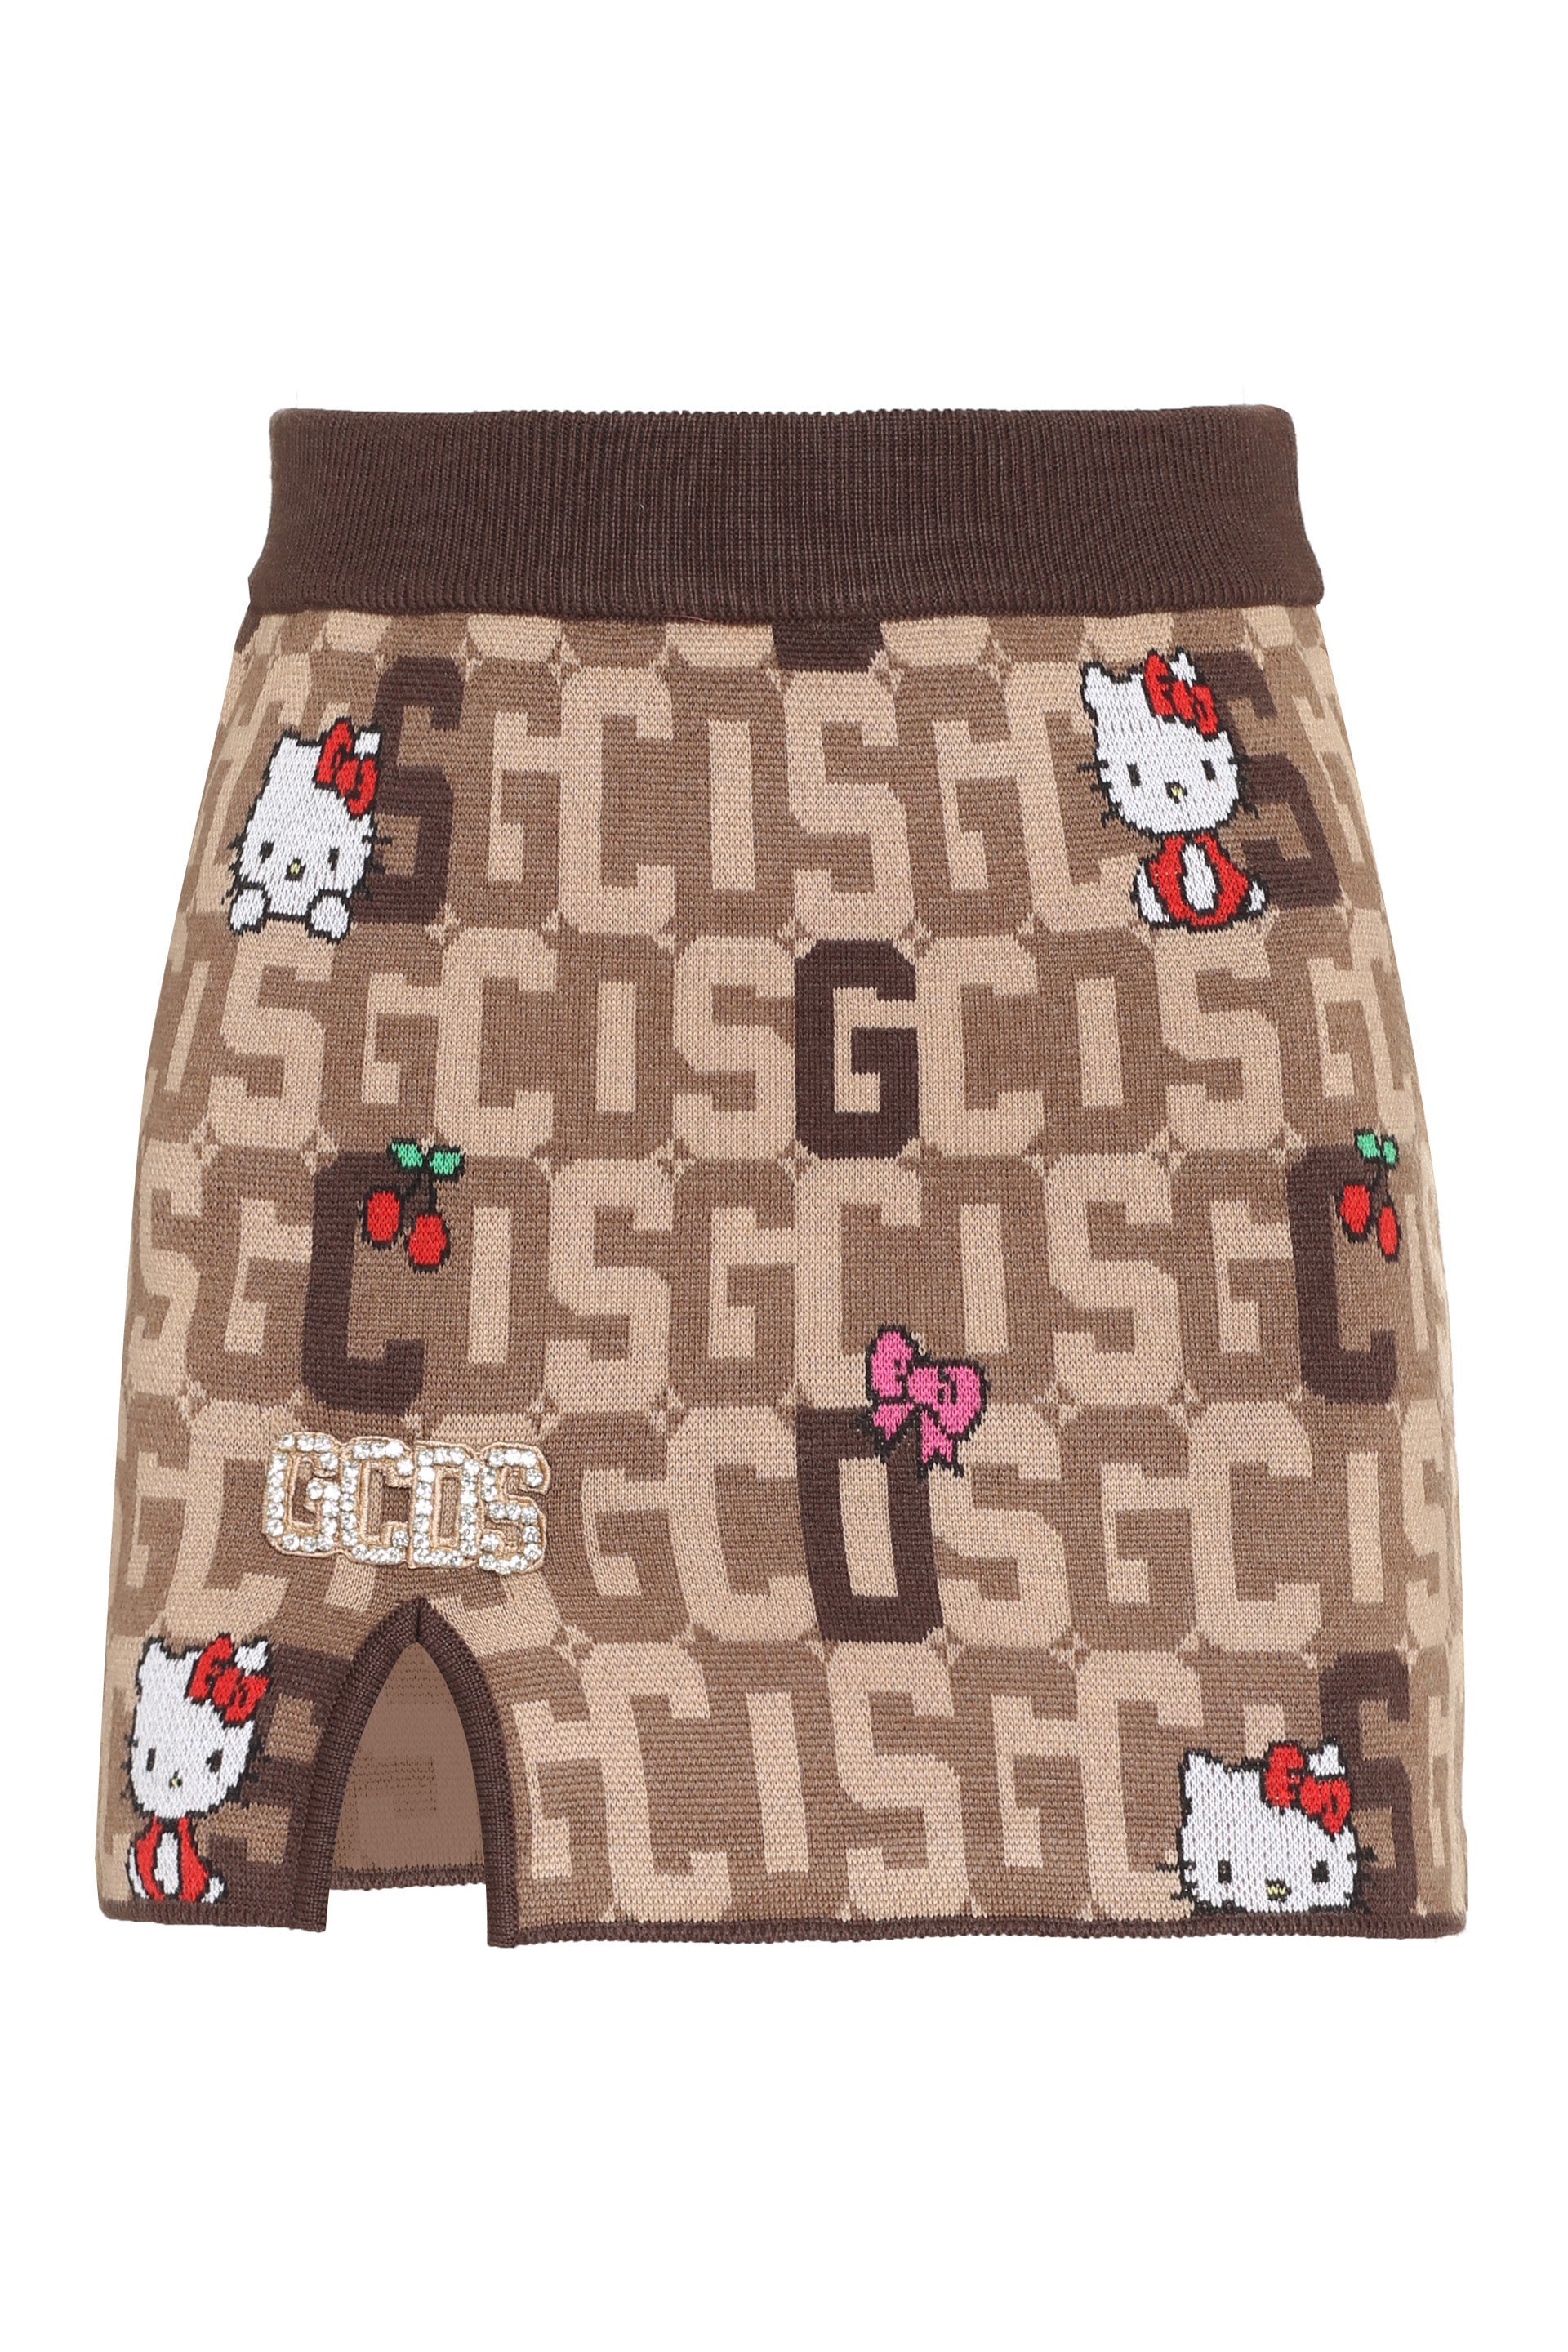 GCDS x Hello Kitty - Wool blend miniskirt-GCDS-OUTLET-SALE-M-ARCHIVIST